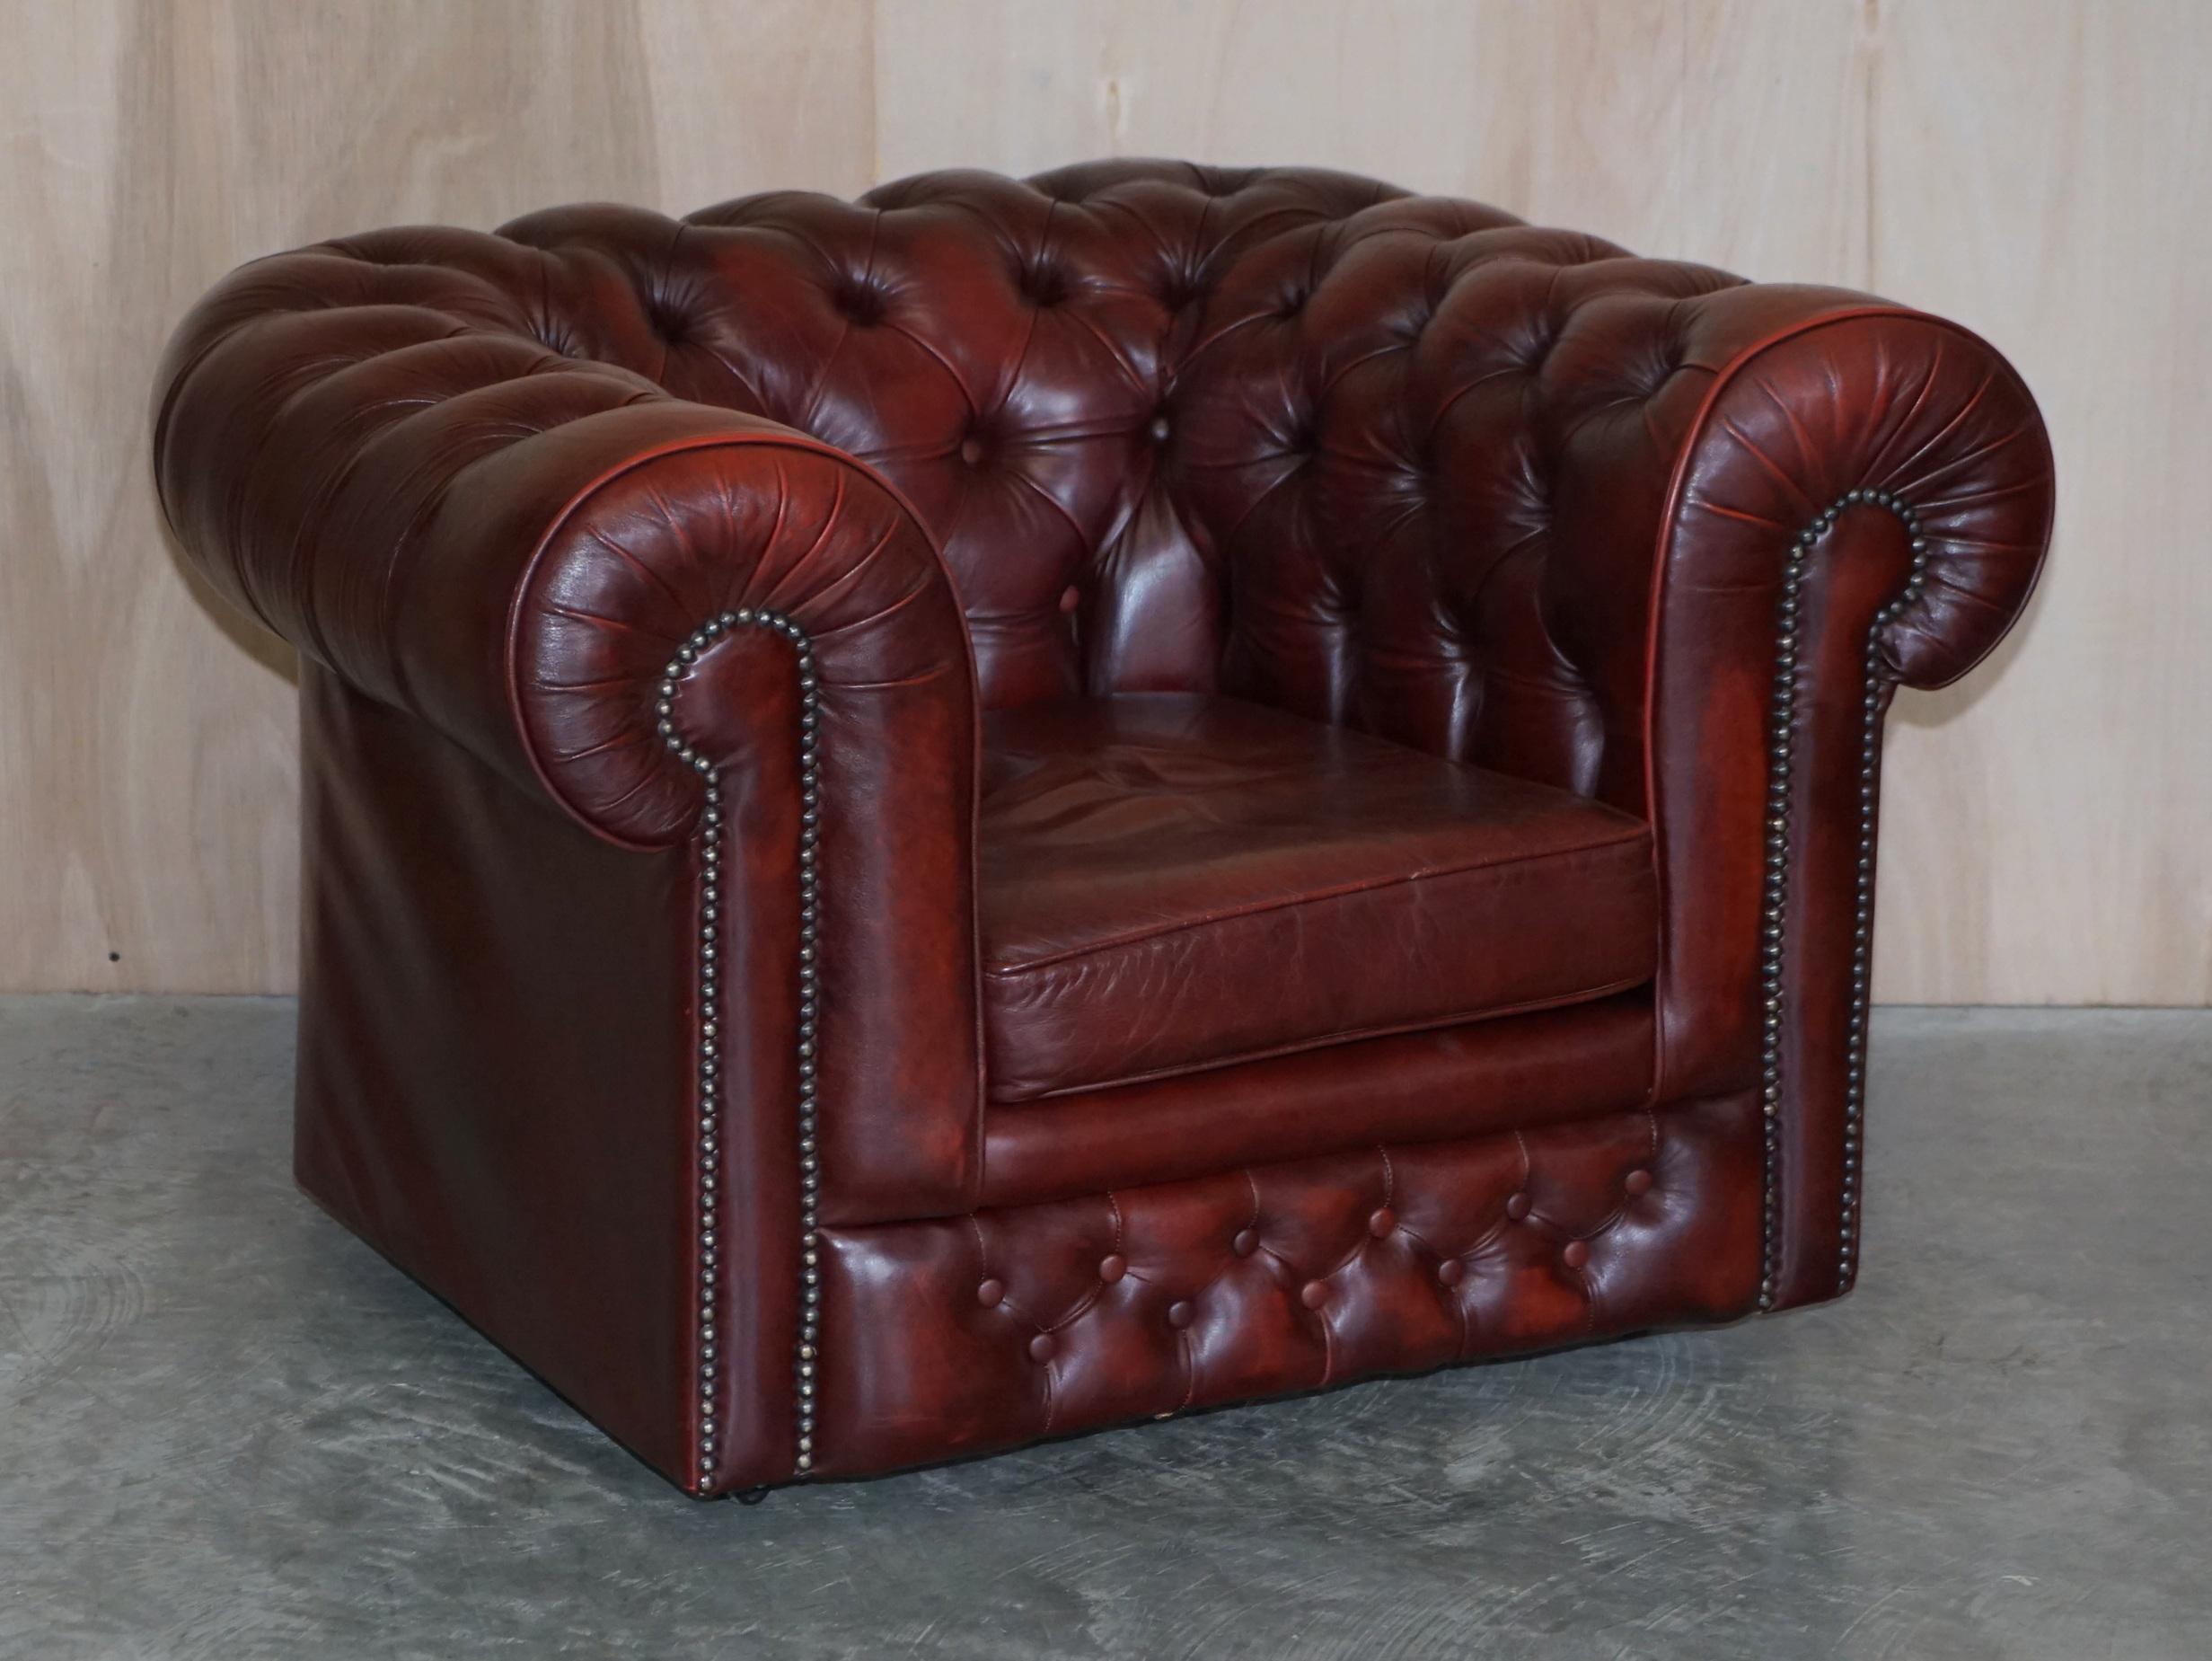 Nous sommes ravis d'offrir à la vente cette paire de fauteuils Chesterfield Club en cuir Oxblood qui font partie d'une suite de fauteuils.

Ils font partie d'une suite, comme indiqué

Ces chaises ont une cinquantaine d'années, elles ont des